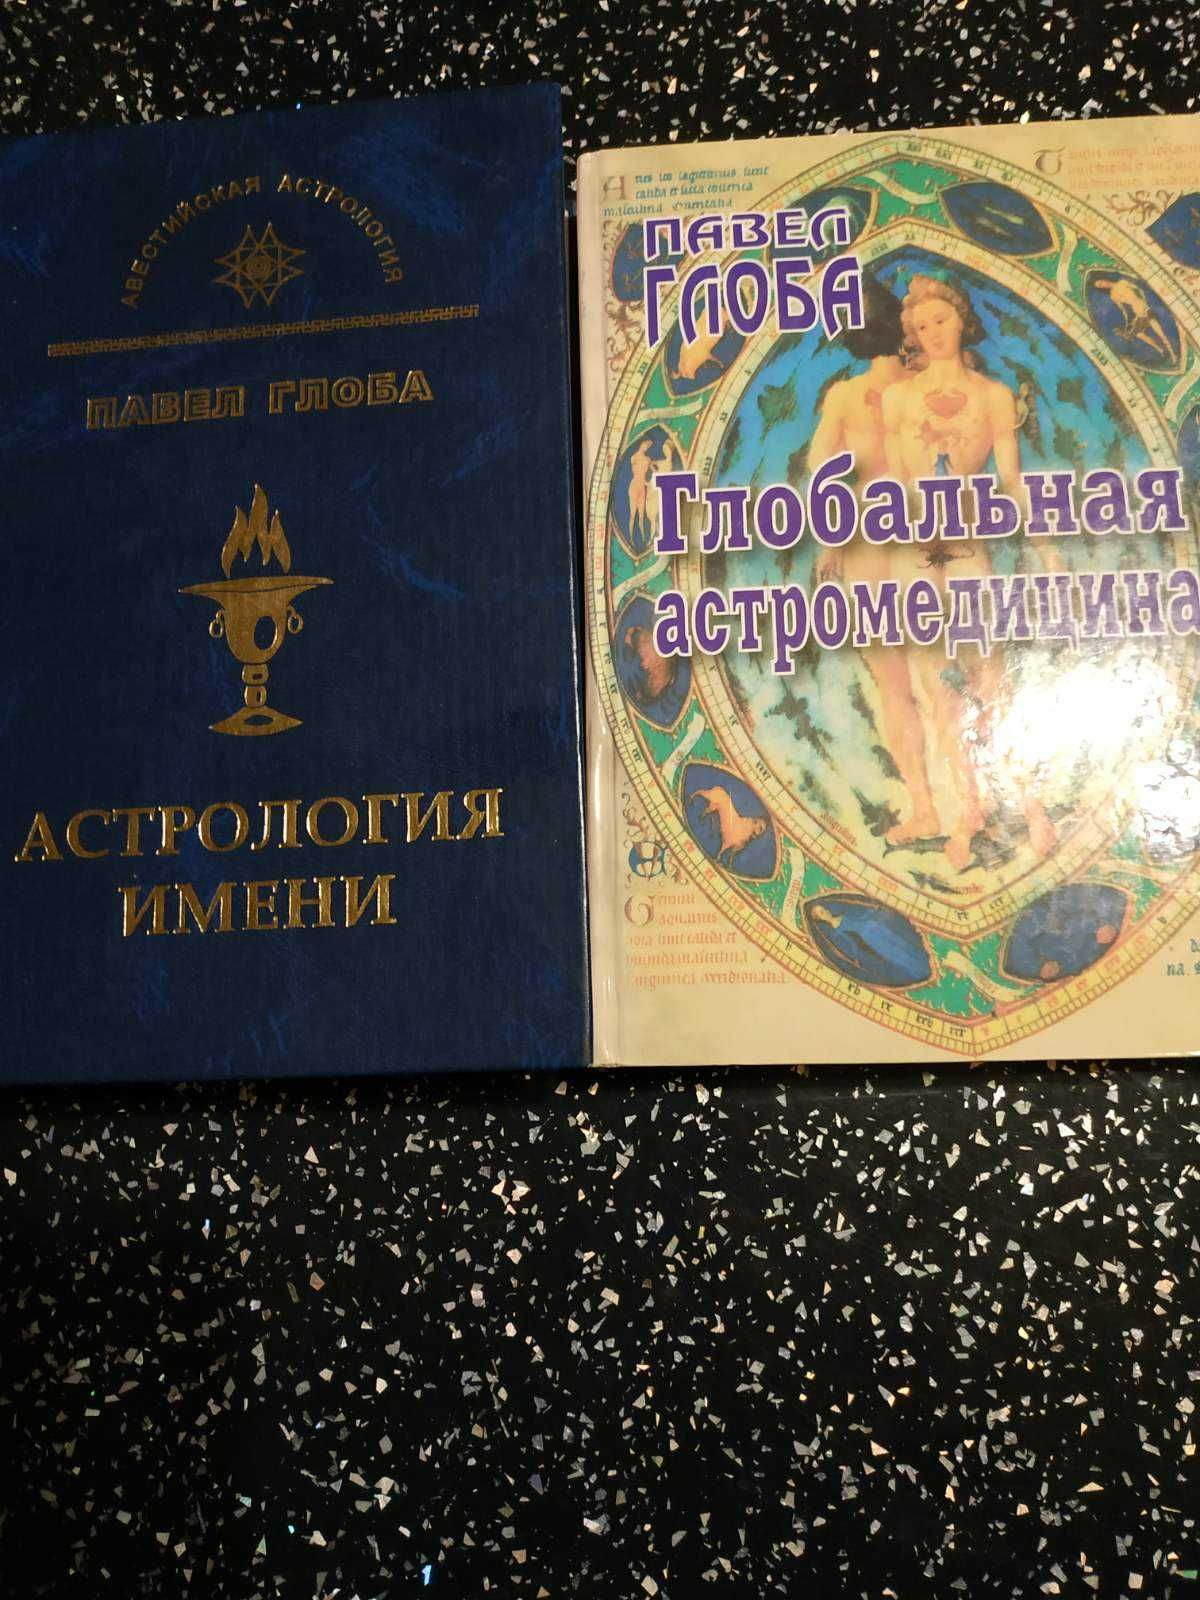 Книги по Авестийской Астрологии П. П. Глобы.